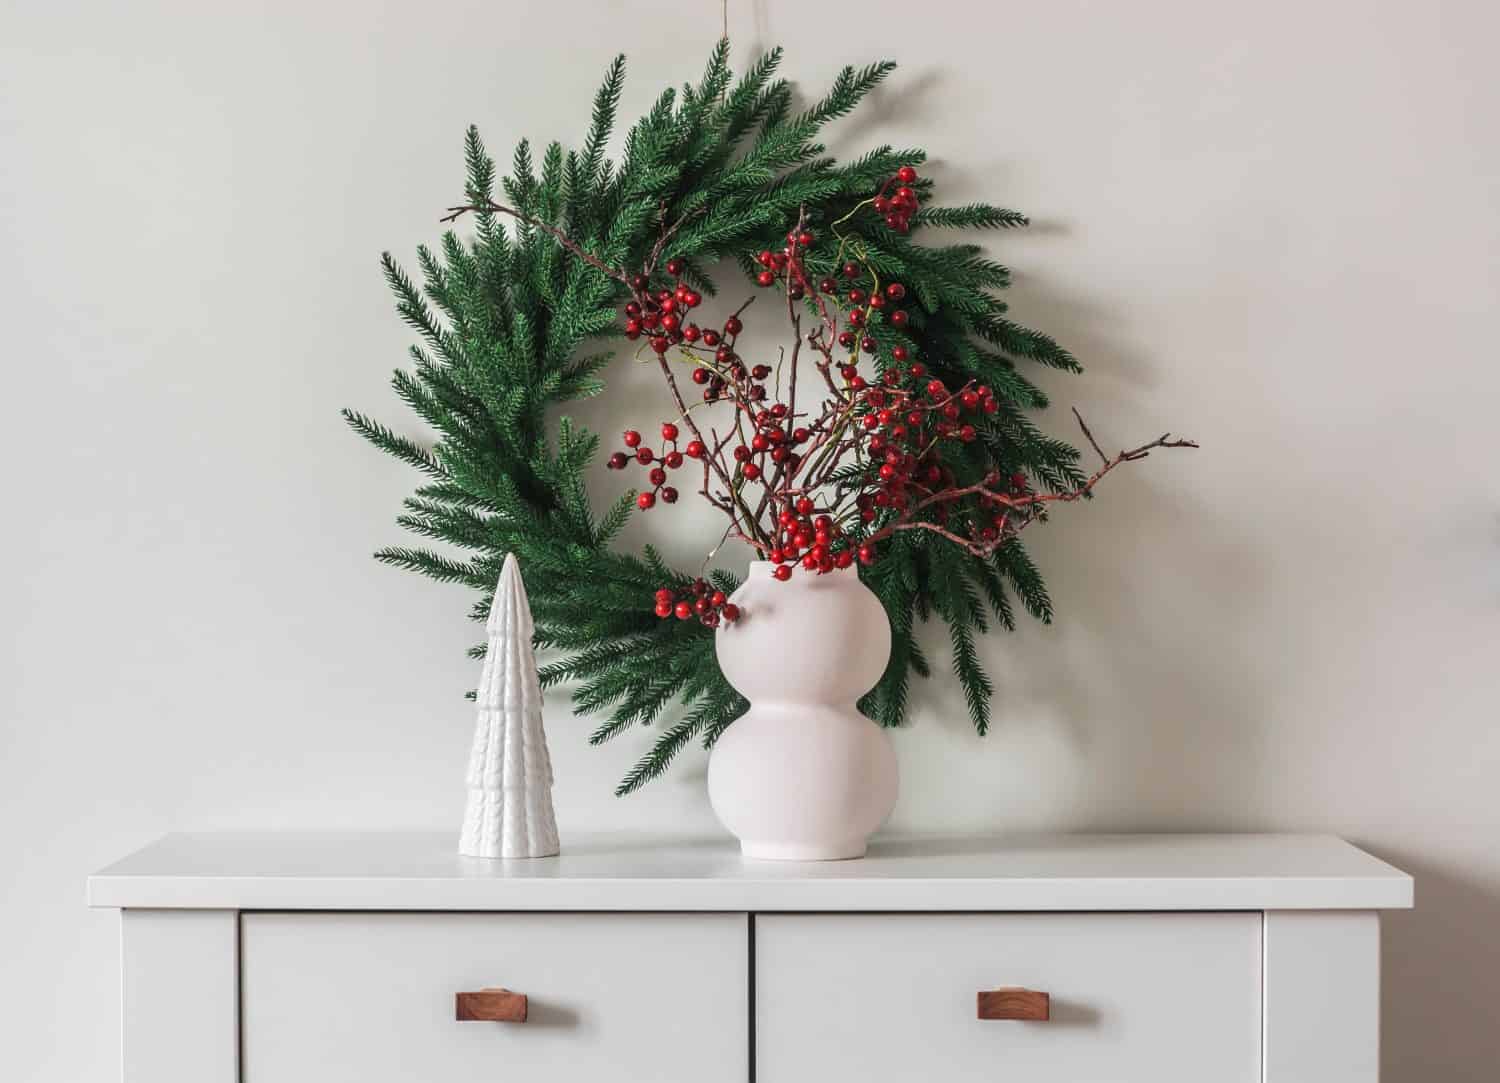 Decorazioni natalizie in stile scandinavo nel soggiorno: una ghirlanda di abete rosso sul muro, un vaso con rami di mirtillo rosso su una cassettiera bianca